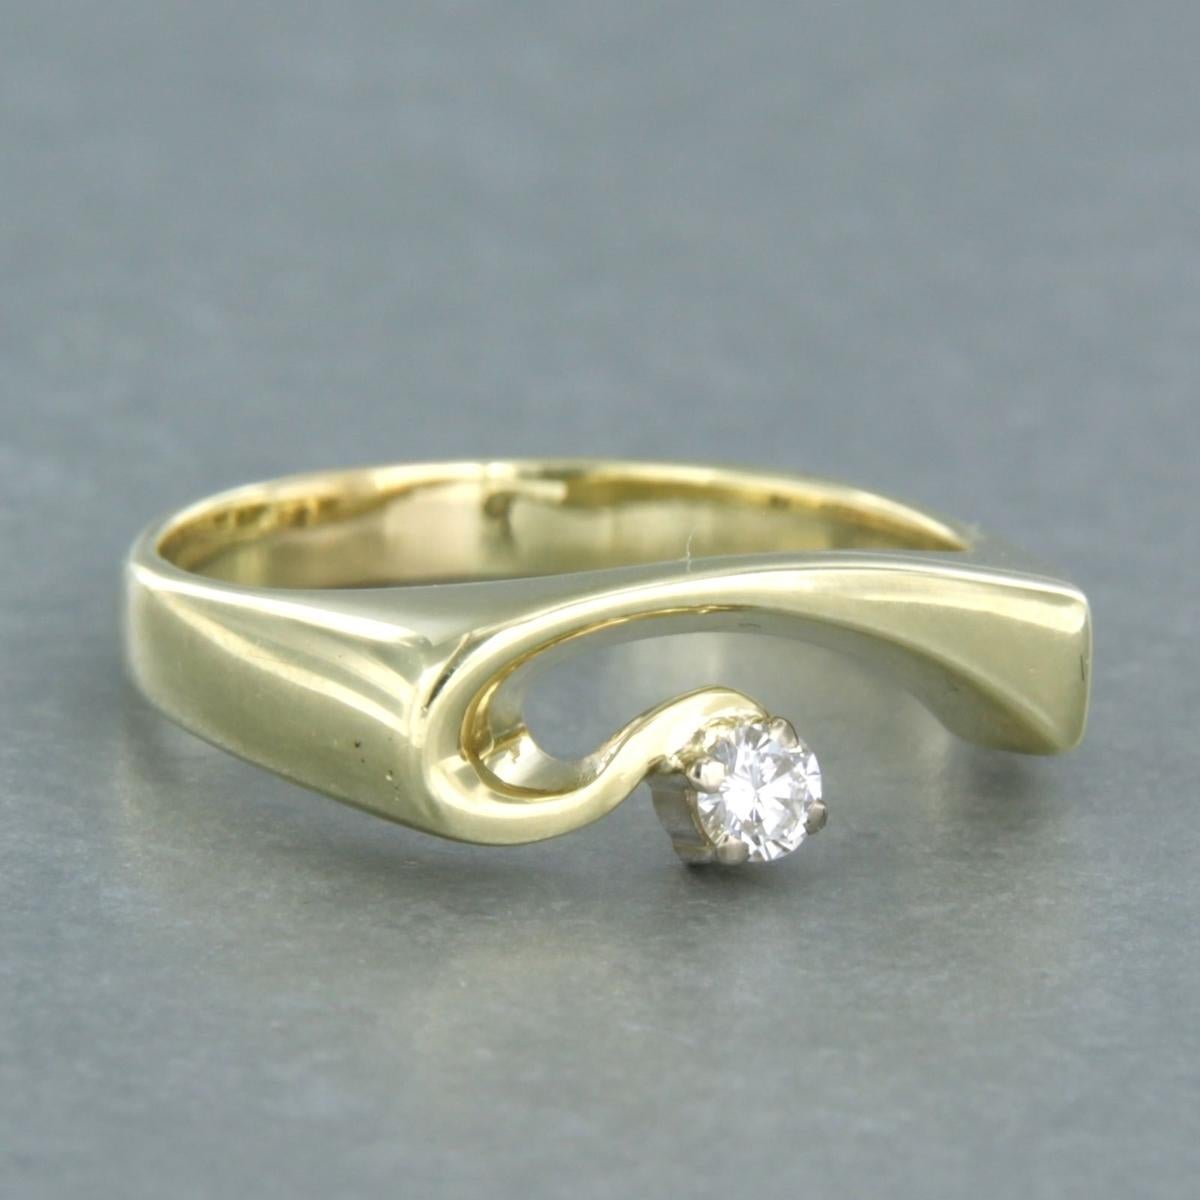 bague en or jaune 14k sertie d'un diamant taille brillant de 0,12 carat - Taille de la bague : 8,50 US

La tête de l'anneau a une largeur de 7,2 mm (0,3 pouce)
Taille de l'anneau : US 8.50 / EU 18.5 (58)
Poids : 5,2 grammes (0,2 oz)

Ensemble avec